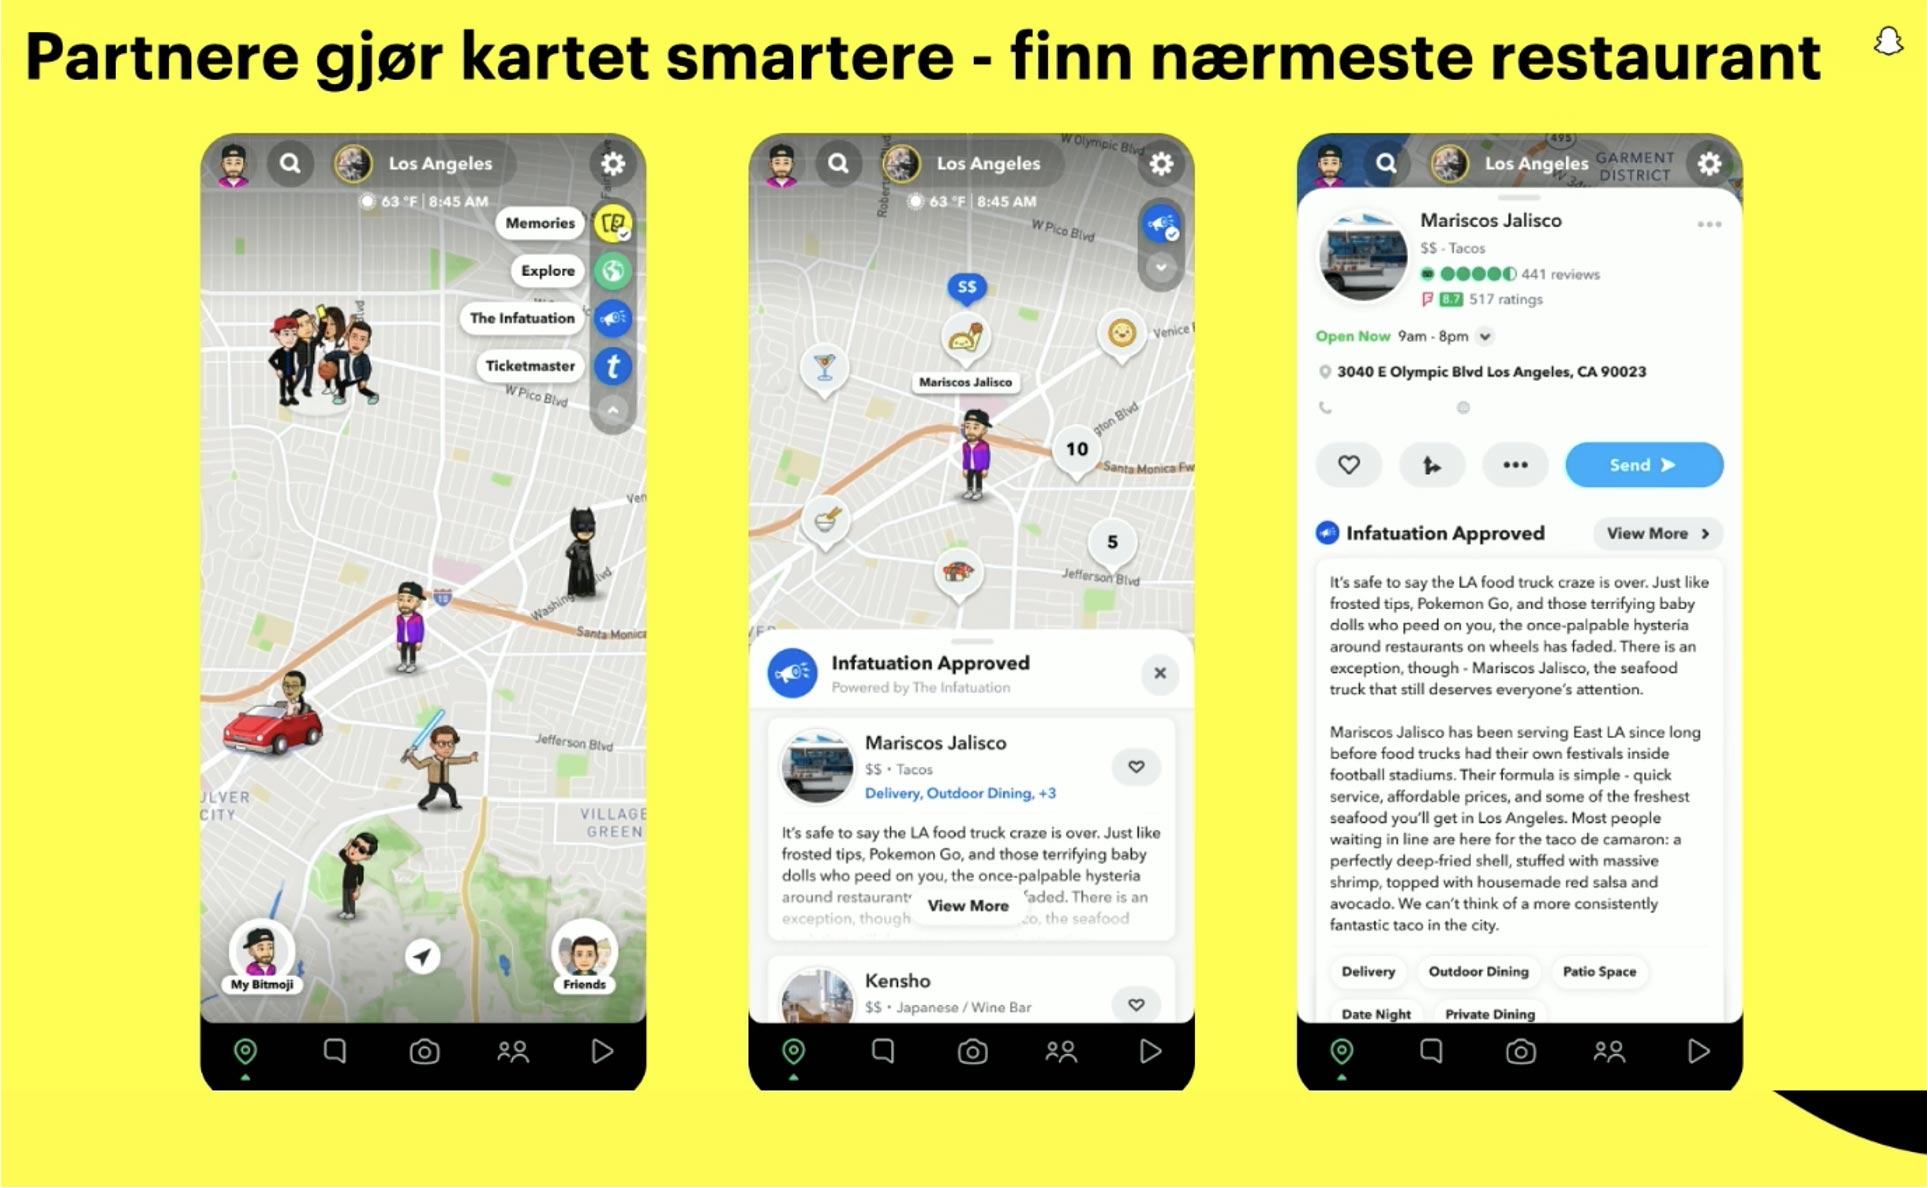 Visning av kartet i Snapchat med teksten: "Partnere gjør kartet smartere - finn nærmeste restaurant"